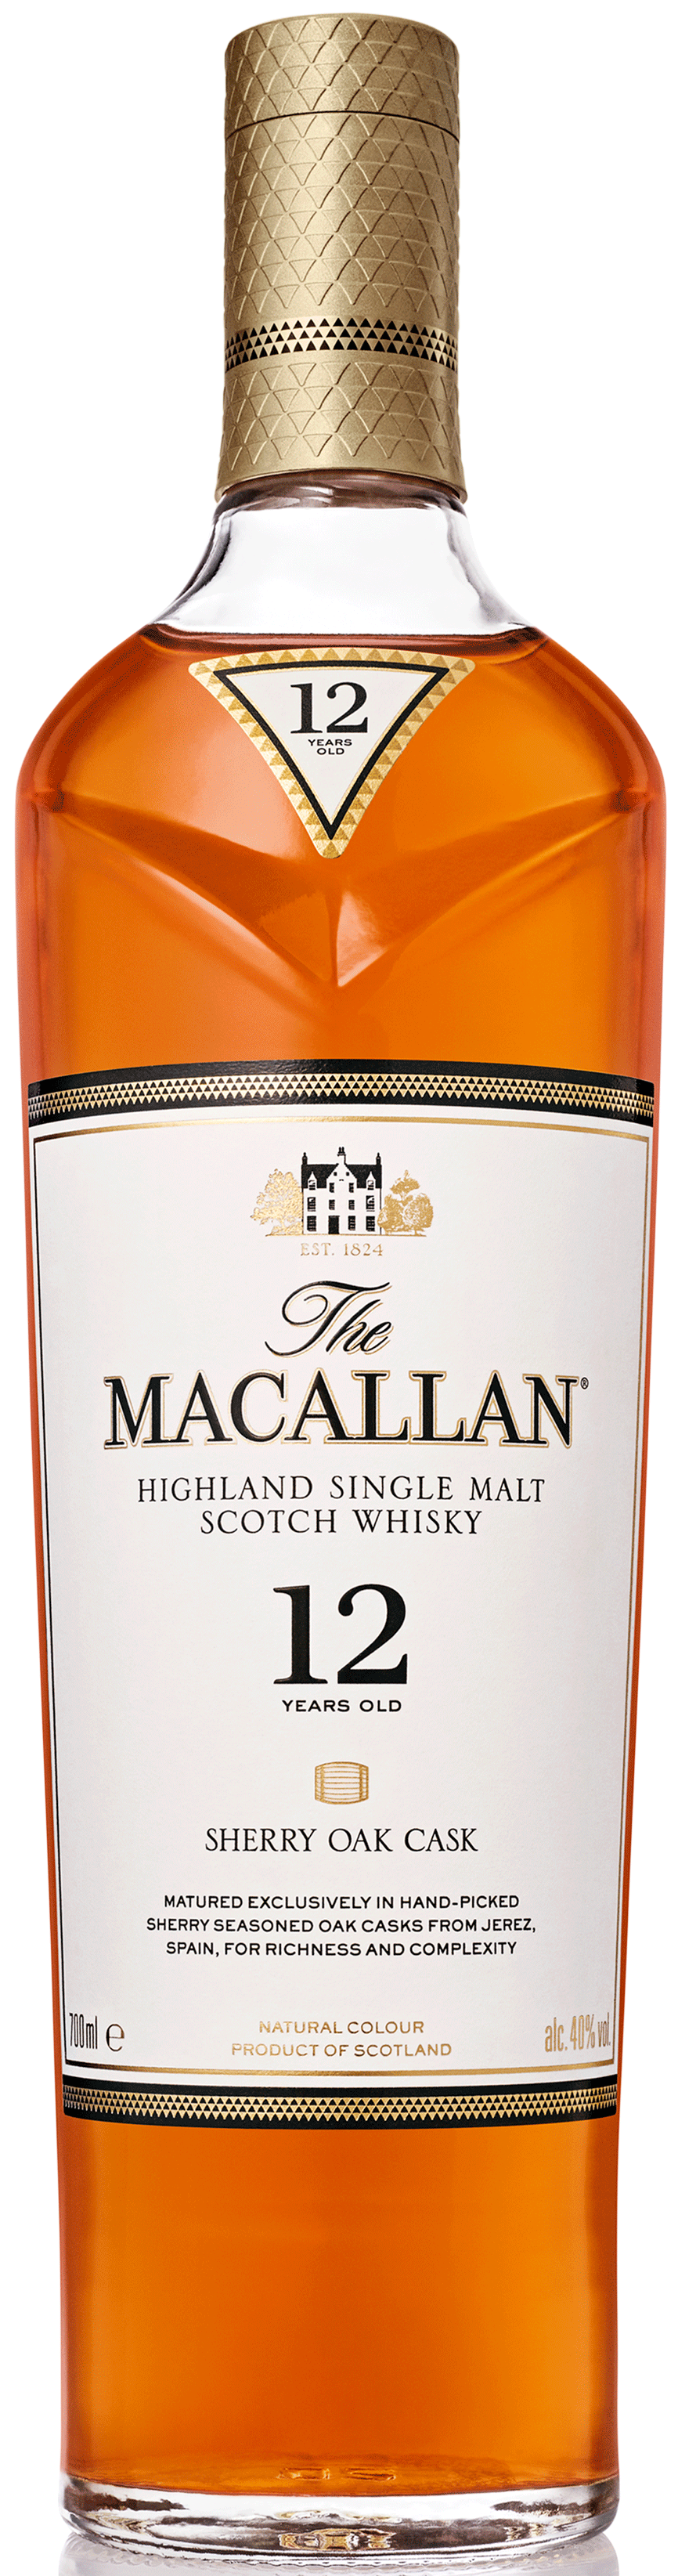 An image of a bottle of Macallan 12 Year Old Sherry Oak Cask Single Malt Whisky